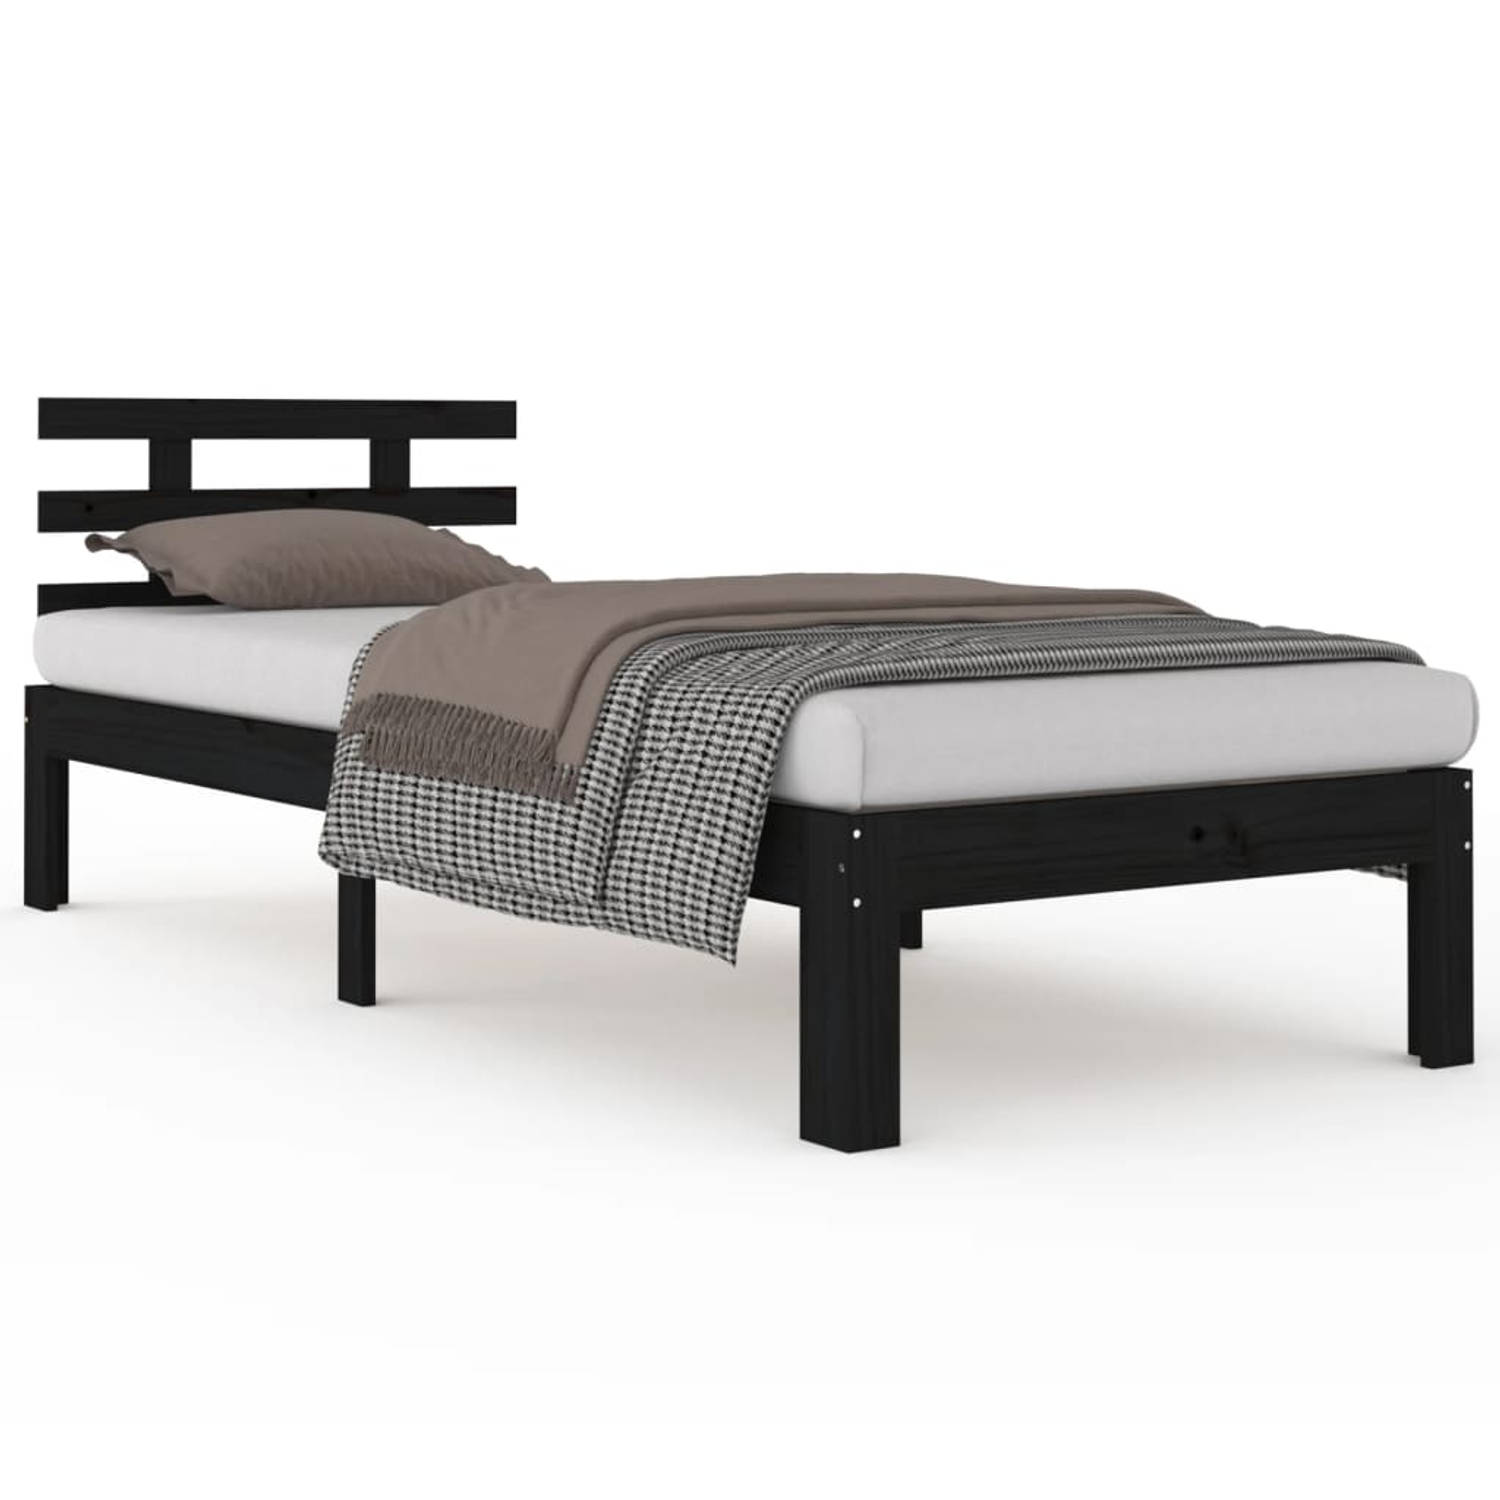 The Living Store Bedframe massief hout zwart 100x200 cm - Bedframe - Bedframes - Bed - Bedbodem - Ledikant - Bed Frame - Massief Houten Bedframe - Slaapmeubel - Eenpersoonsbed - Be